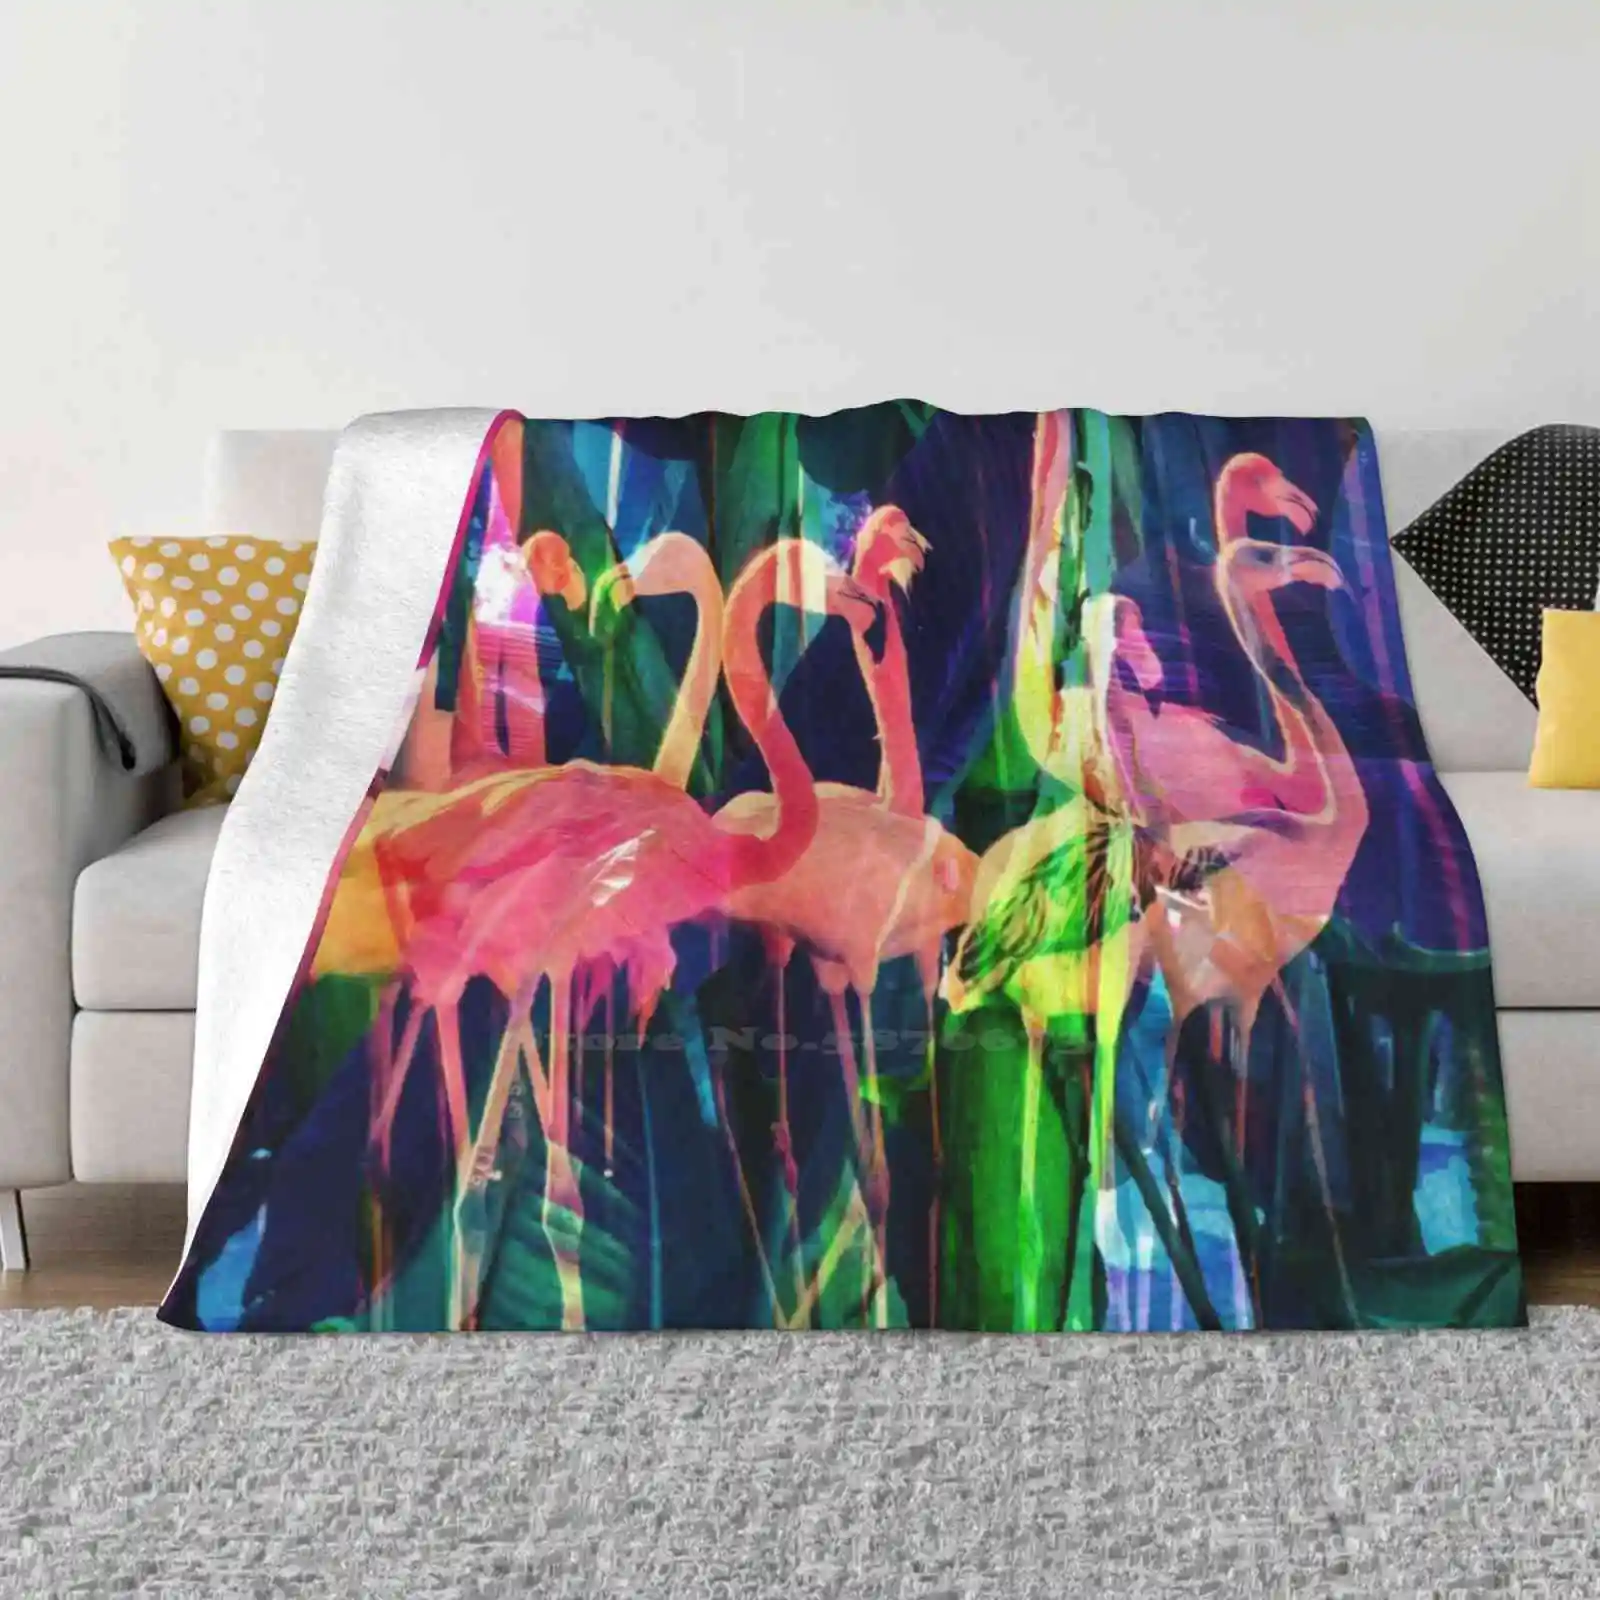 

Яркое фланелевое одеяло с принтом фламинго, фламинго, цветочные цветы, тропические растительные листья, розовый цвет